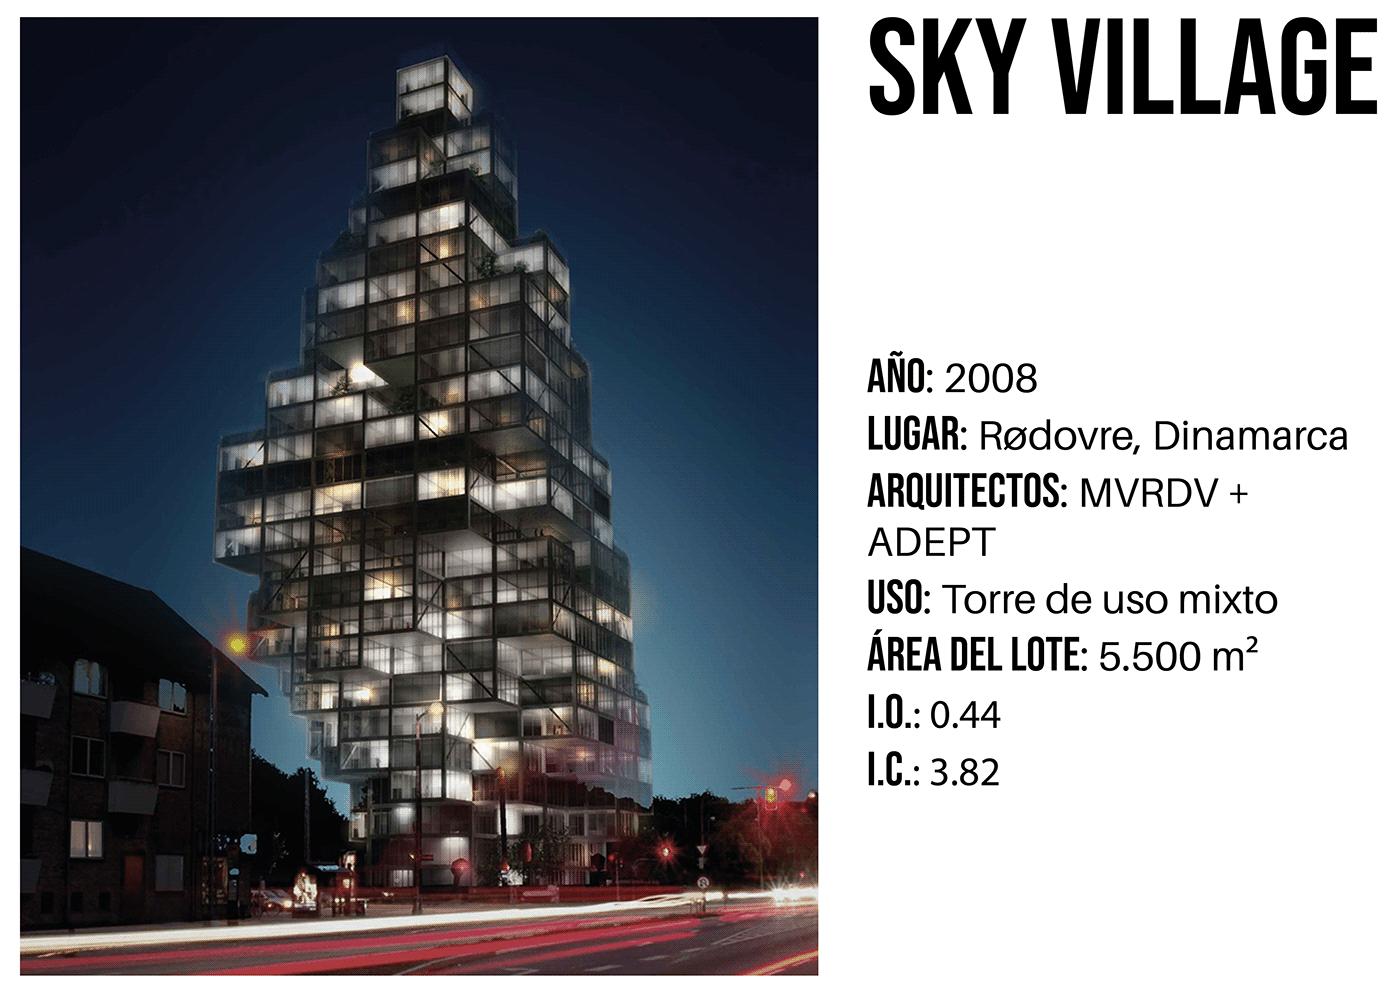 ARQUNIANDES architecture arquitectura MVRDV ARQT2202 Urban diagram adept mixed use Sky village